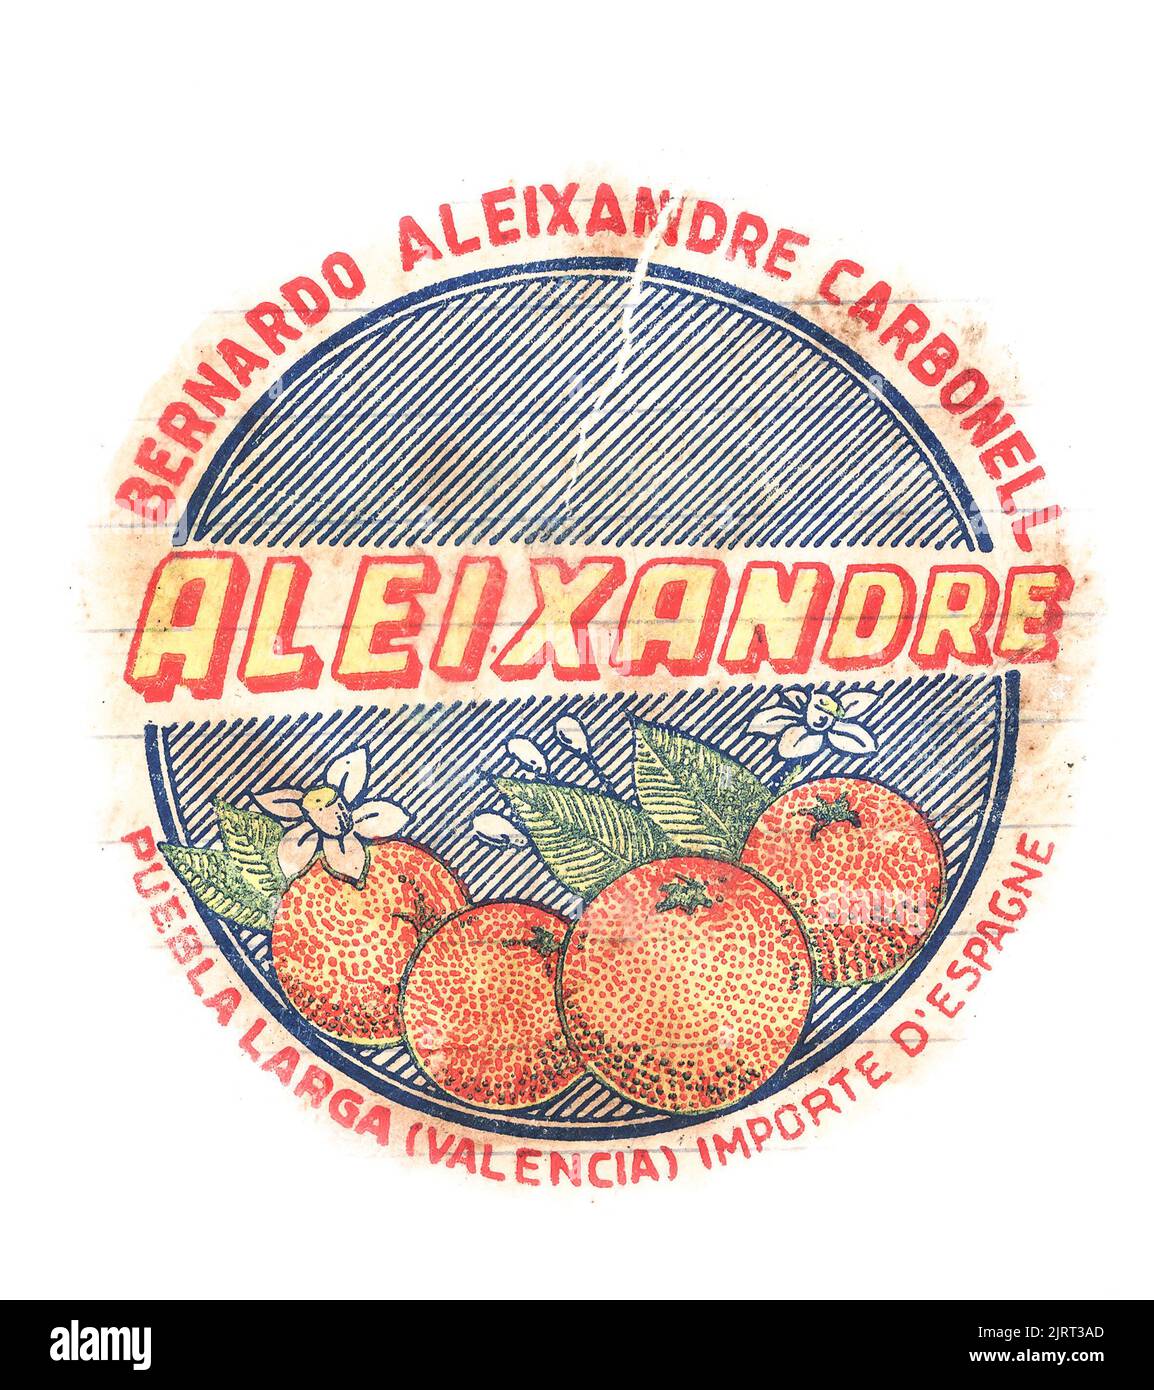 Emballage de papier de soie pour fruits frais, de mi-1950s en Angleterre, avec marque de fabrique du producteur. Bernado Aleixandre Carbonell, Valencia, oranges, Espana, Espagne. Banque D'Images